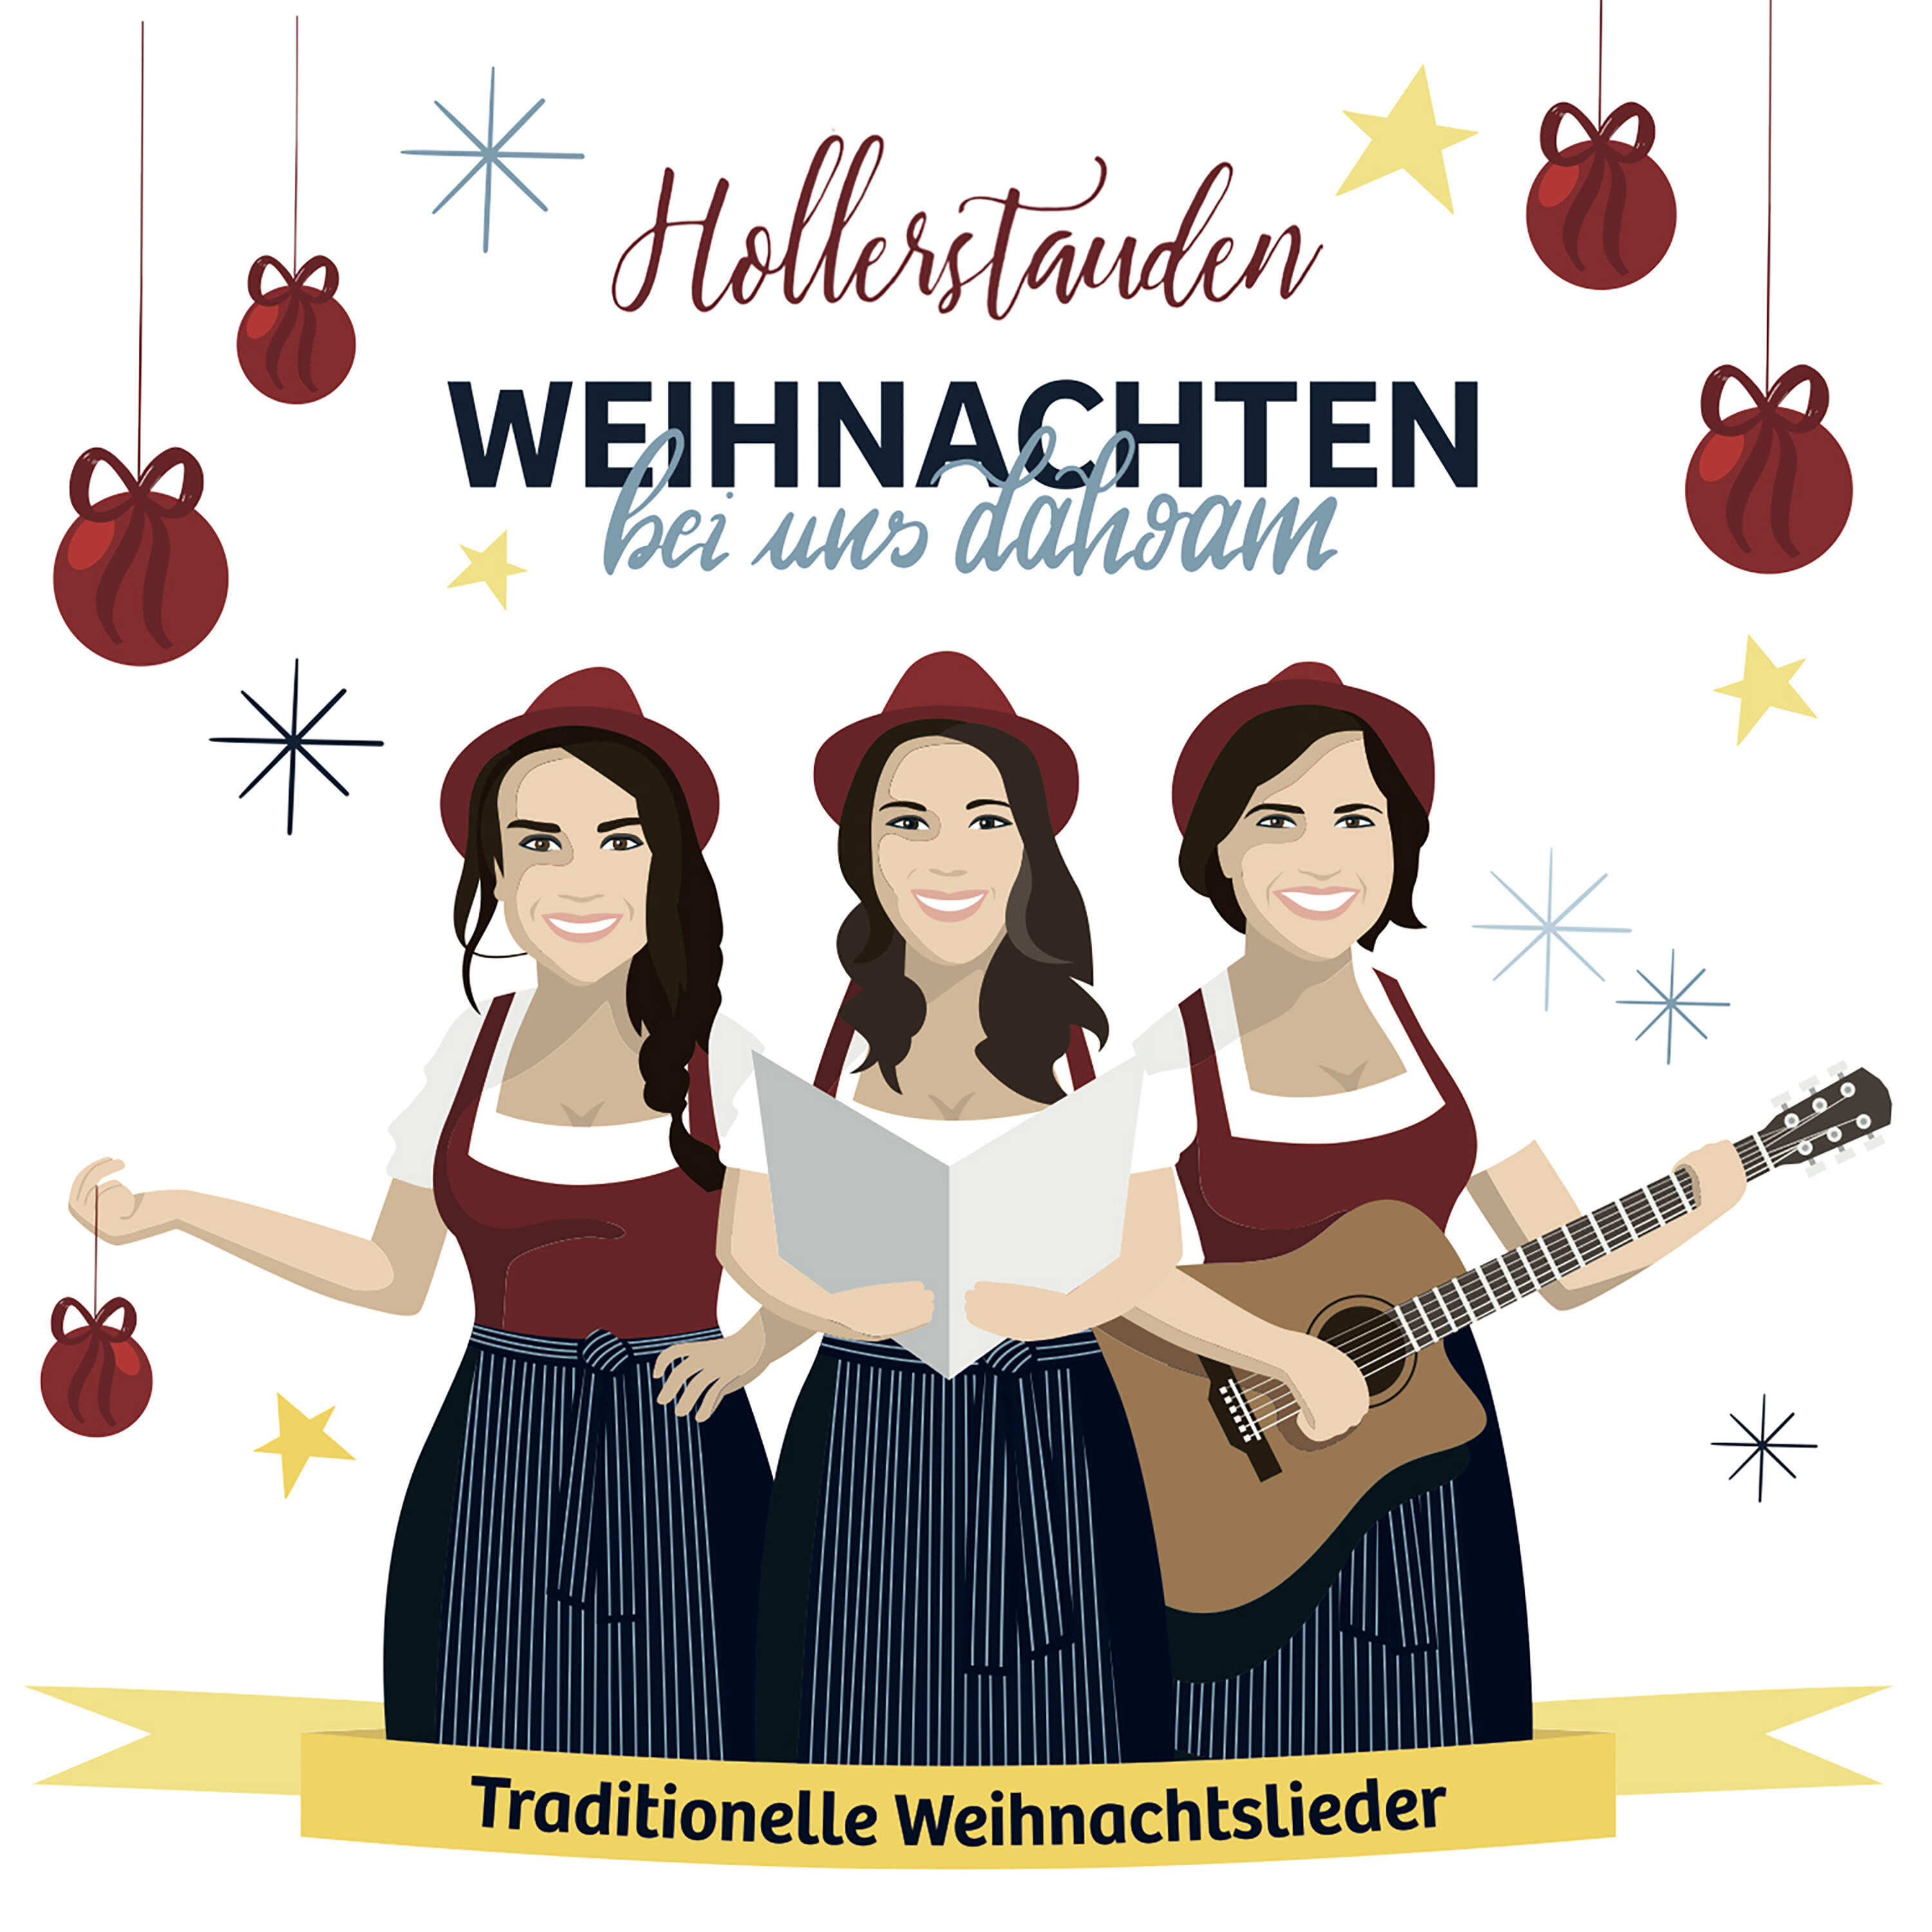 1 CD „Aus dem Hut gezaubert“ + 1 CD inkl. Liederbuch „Weihnachten bei uns dahoam“